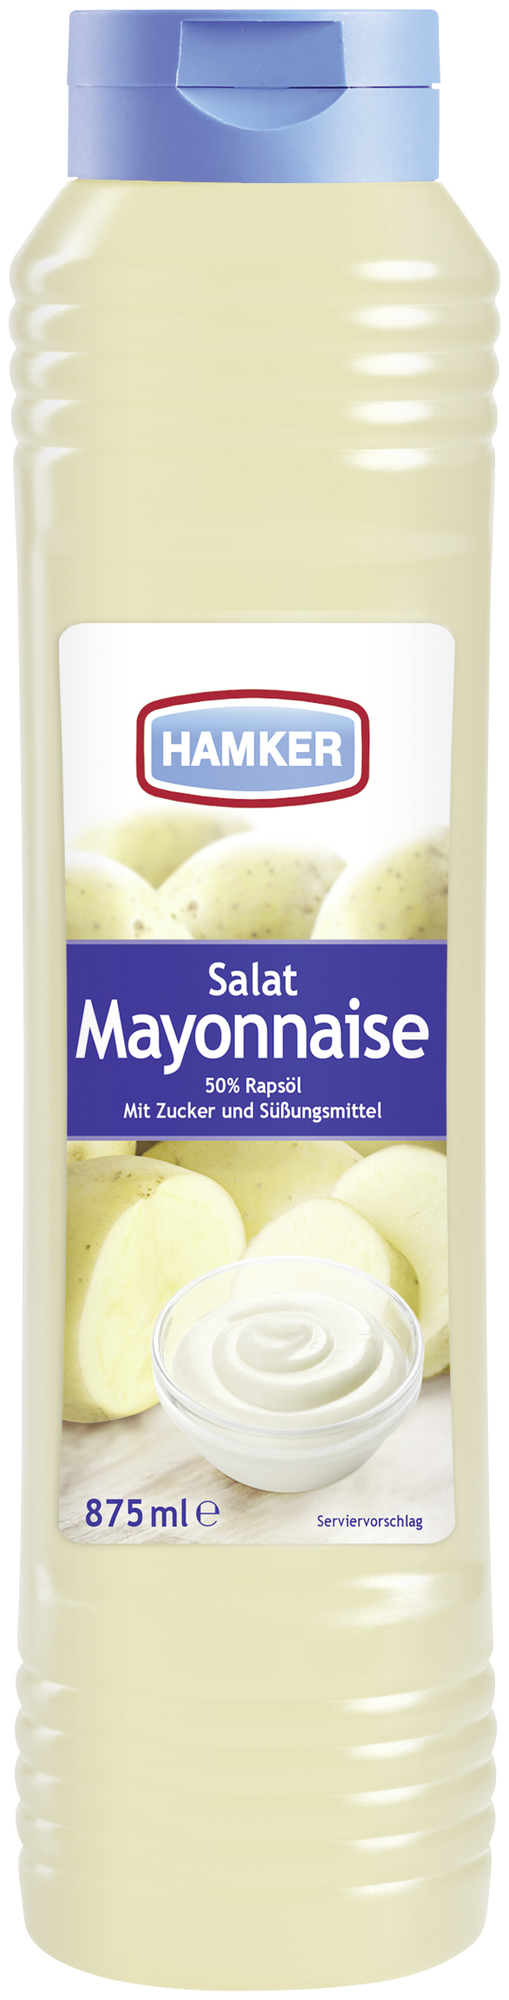 Salat Mayonnaise 875ml